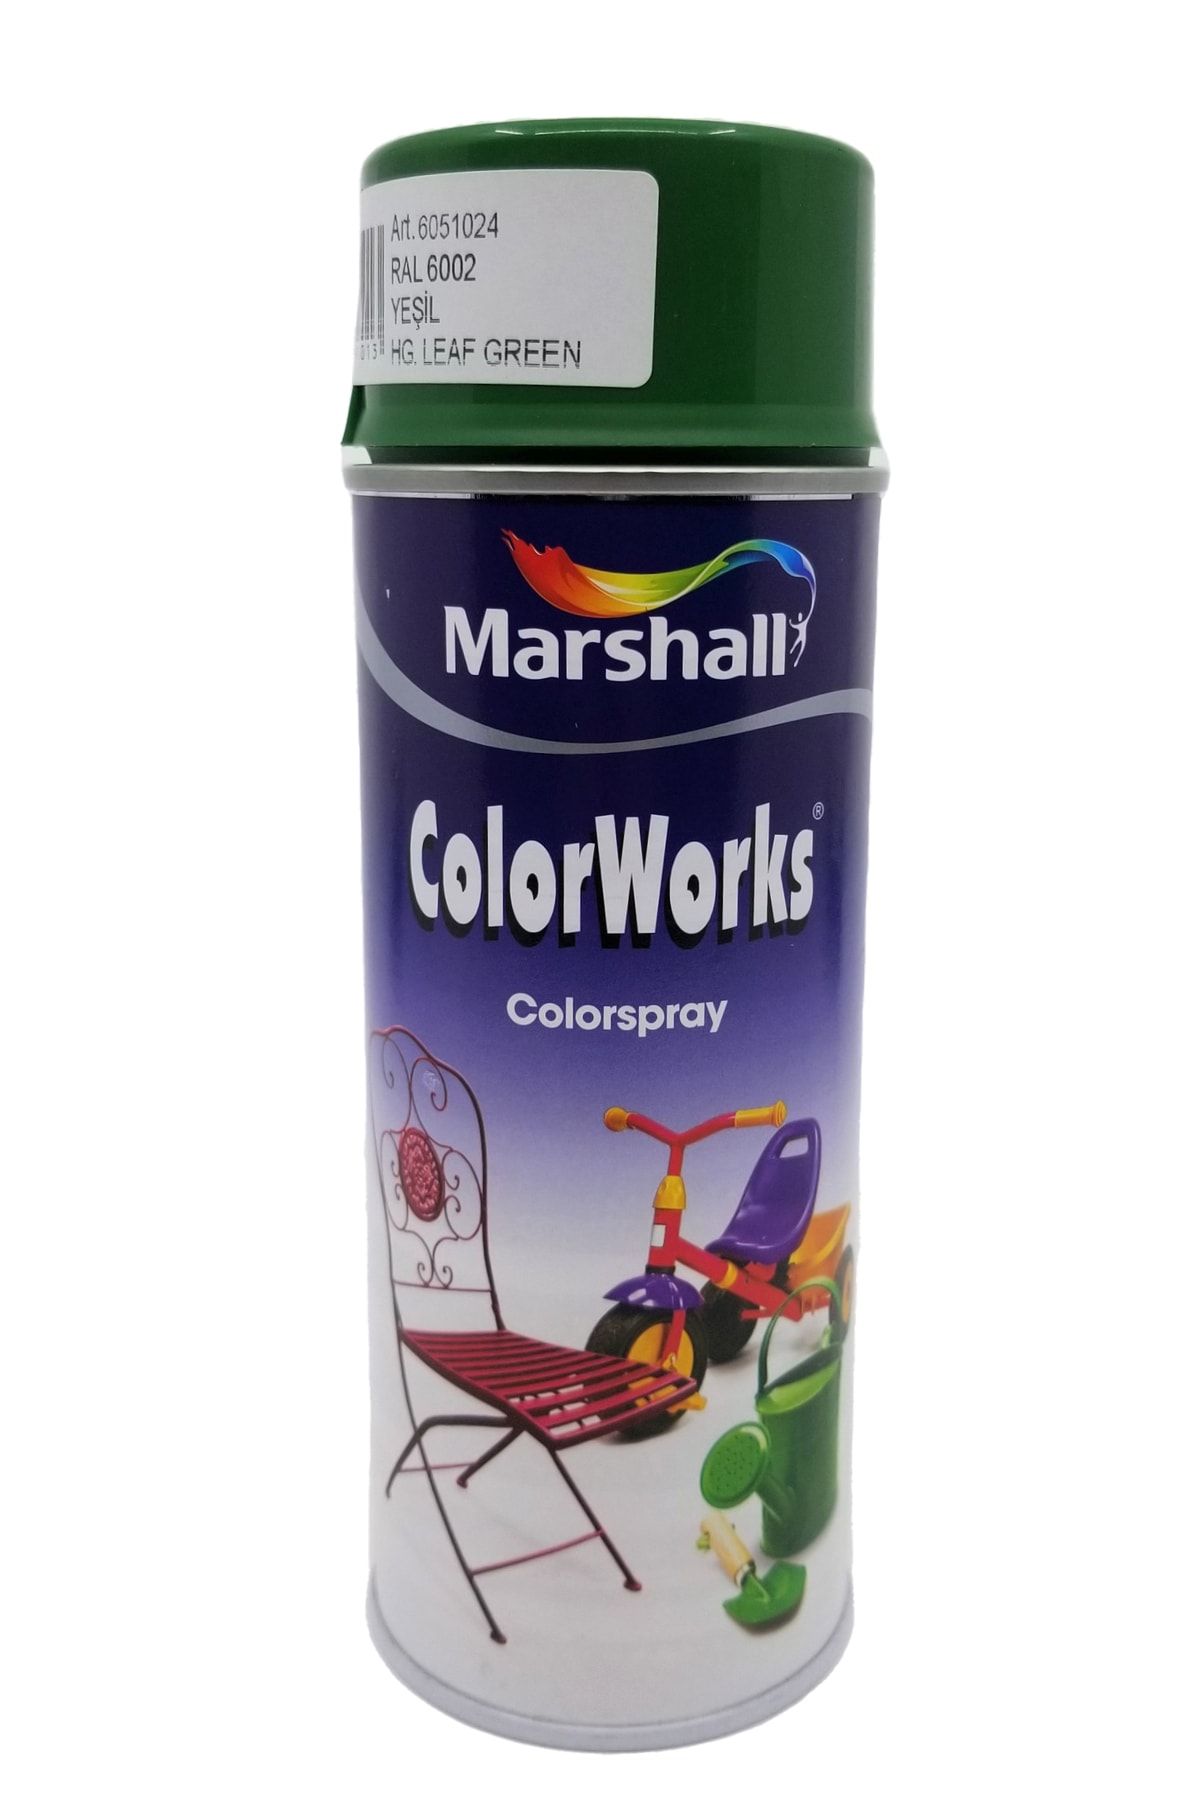 Marshall Colorworks Sentetik Sprey Boya 400ml Yaprak Yeşili